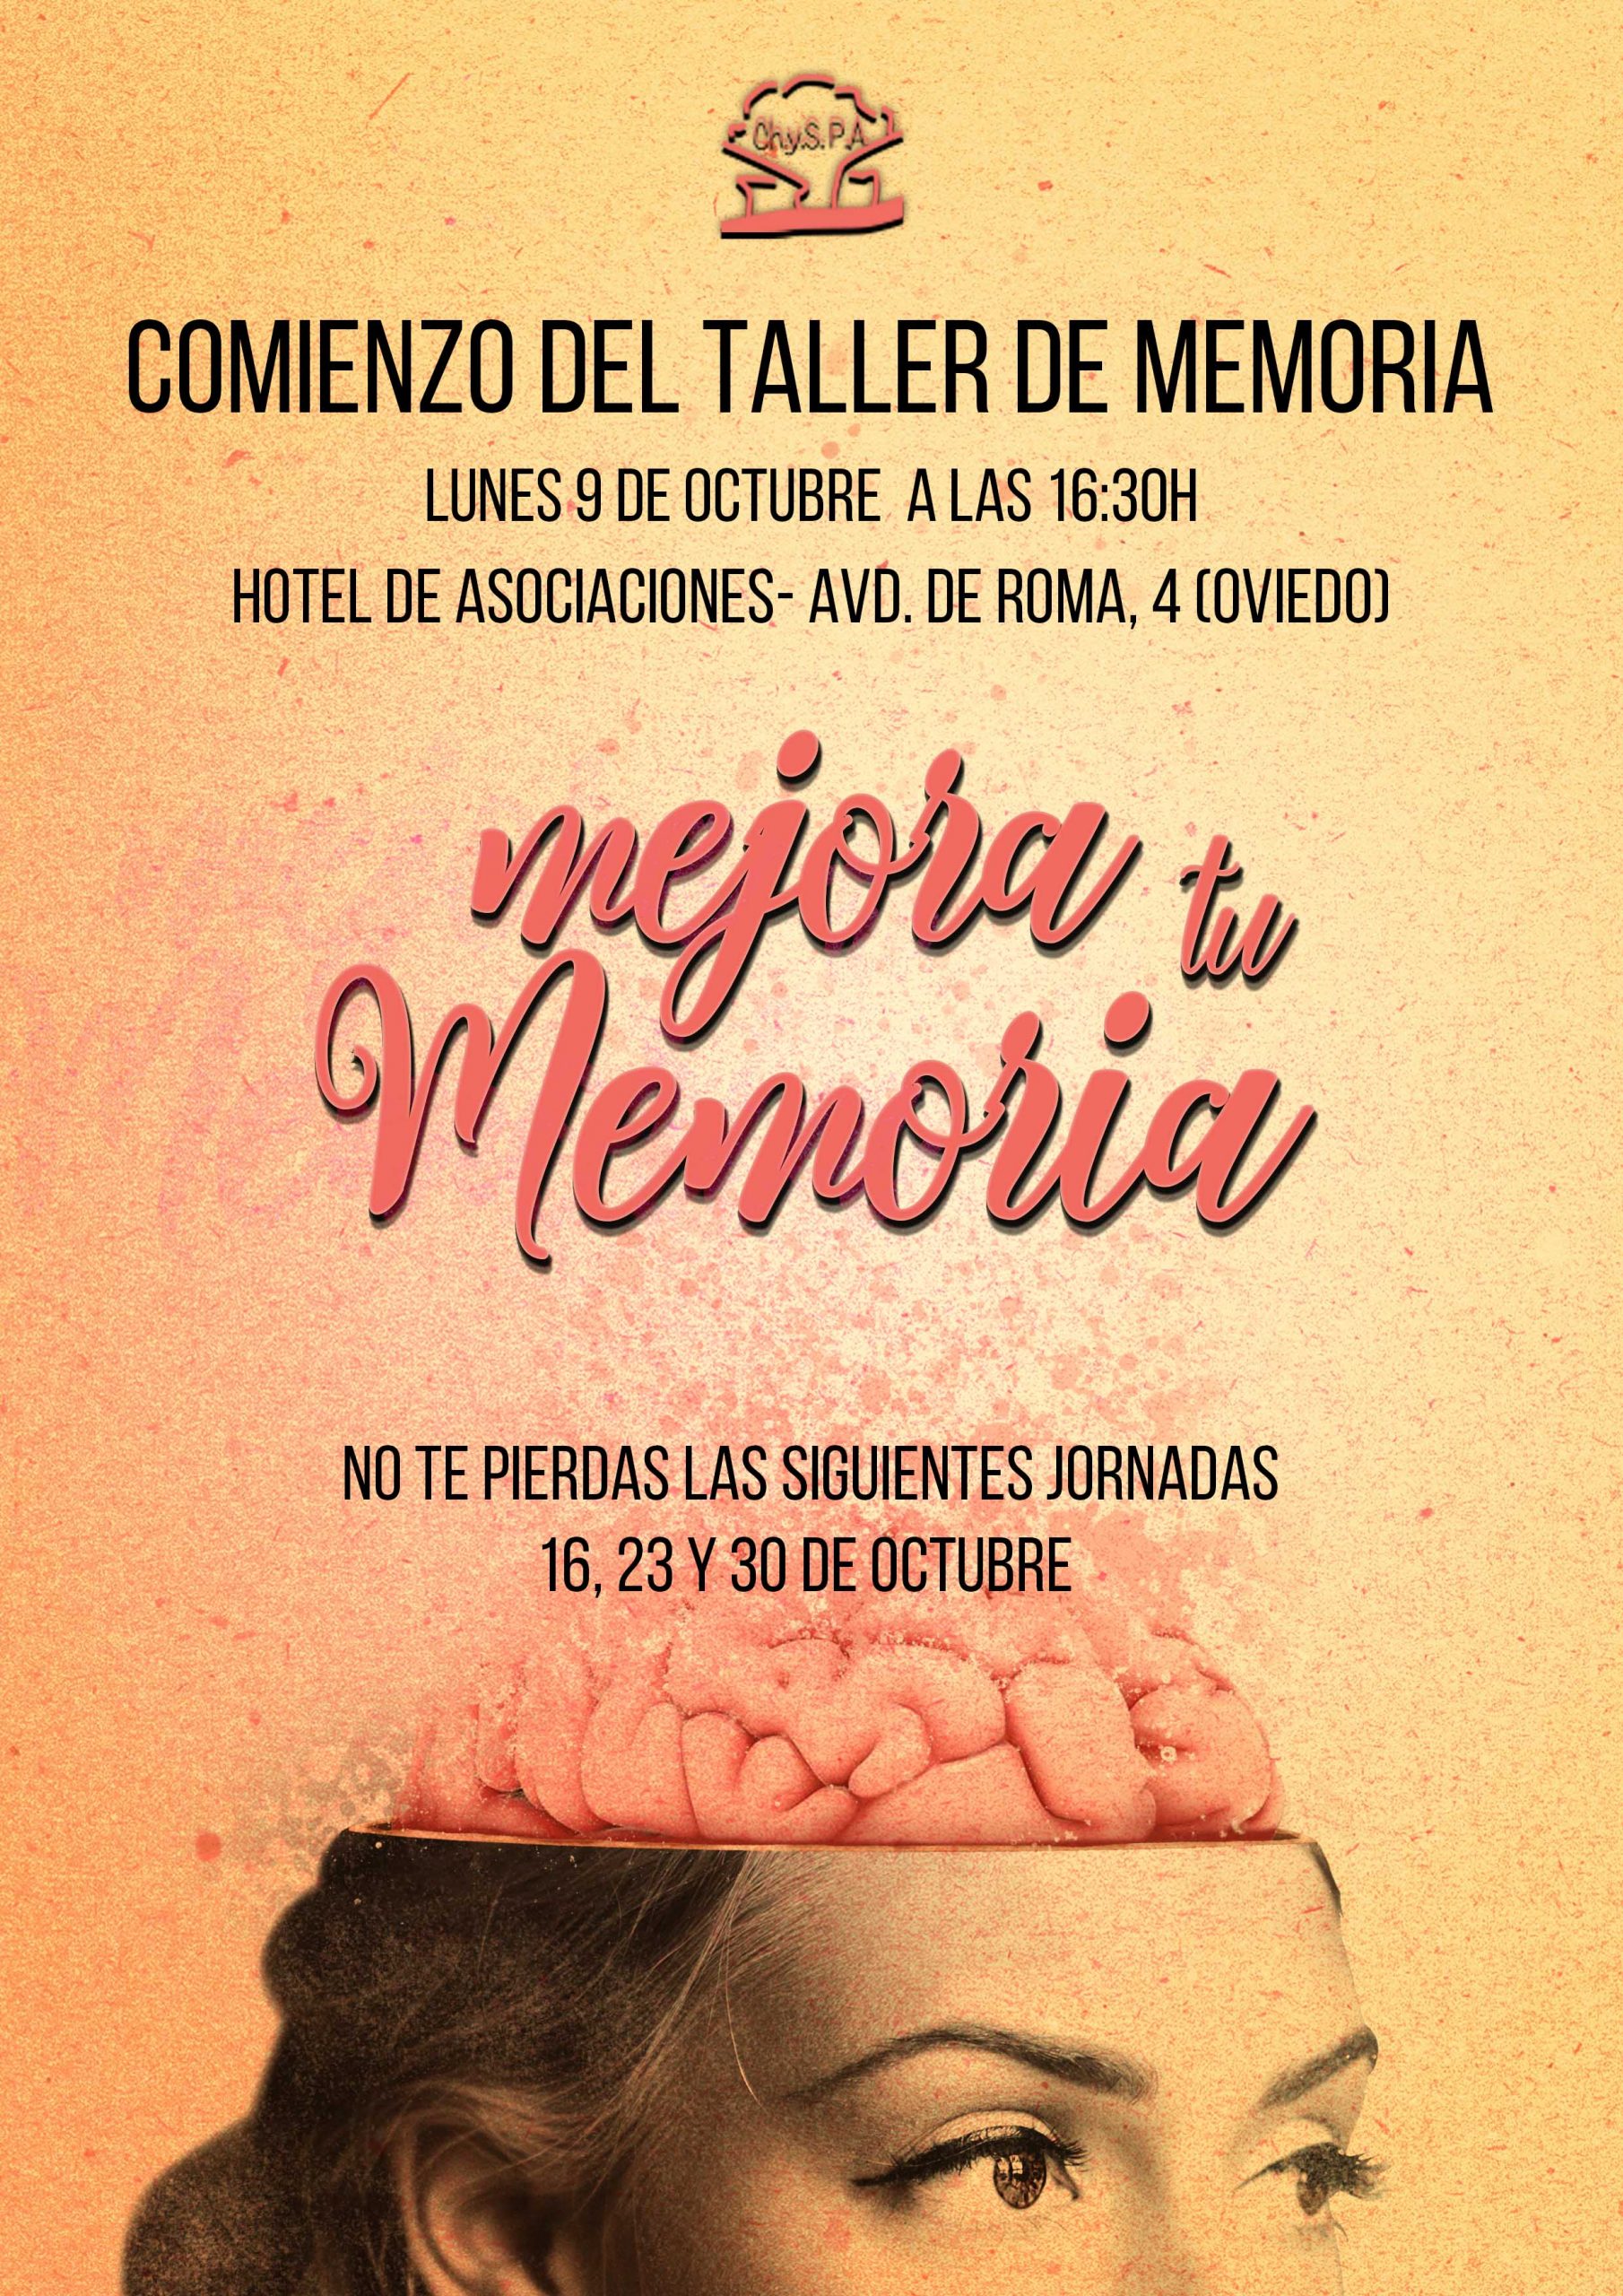 El lunes 9 de octubre damos comienzo al taller de memoria, a las 16:30h en Hotel de asociaciones, Avd. de Roma 4 (Oviedo),constará de 4 jornadas en las que se trabajará la memoria.